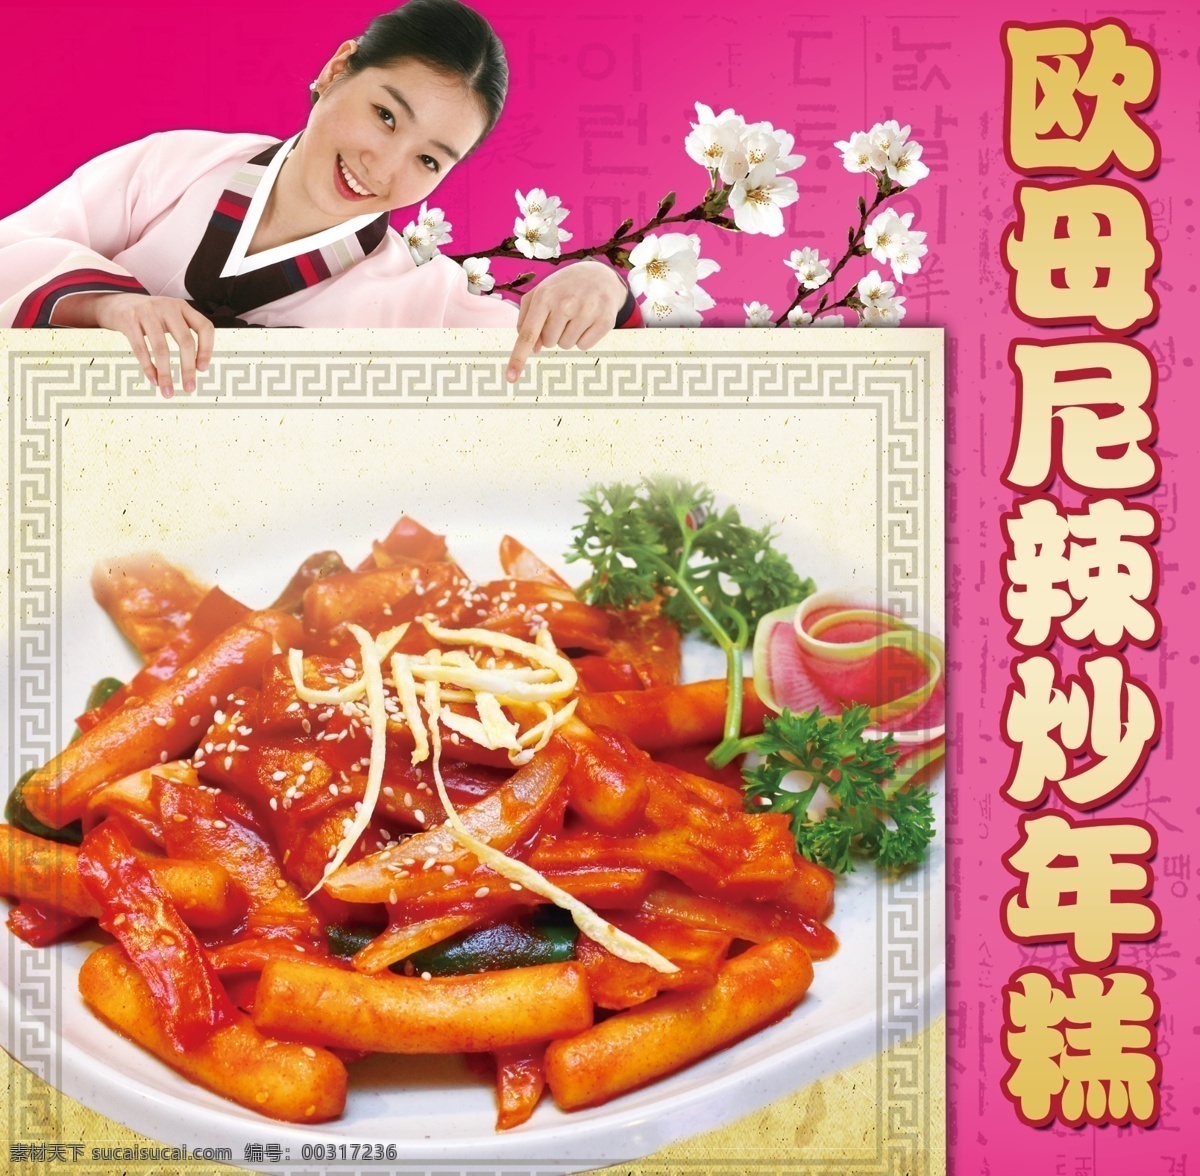 炒年糕 韩国美女 韩服 年糕 韩国美食 亚洲美味 餐饮海报 美食海报 餐饮模板 小吃车海报 紫色